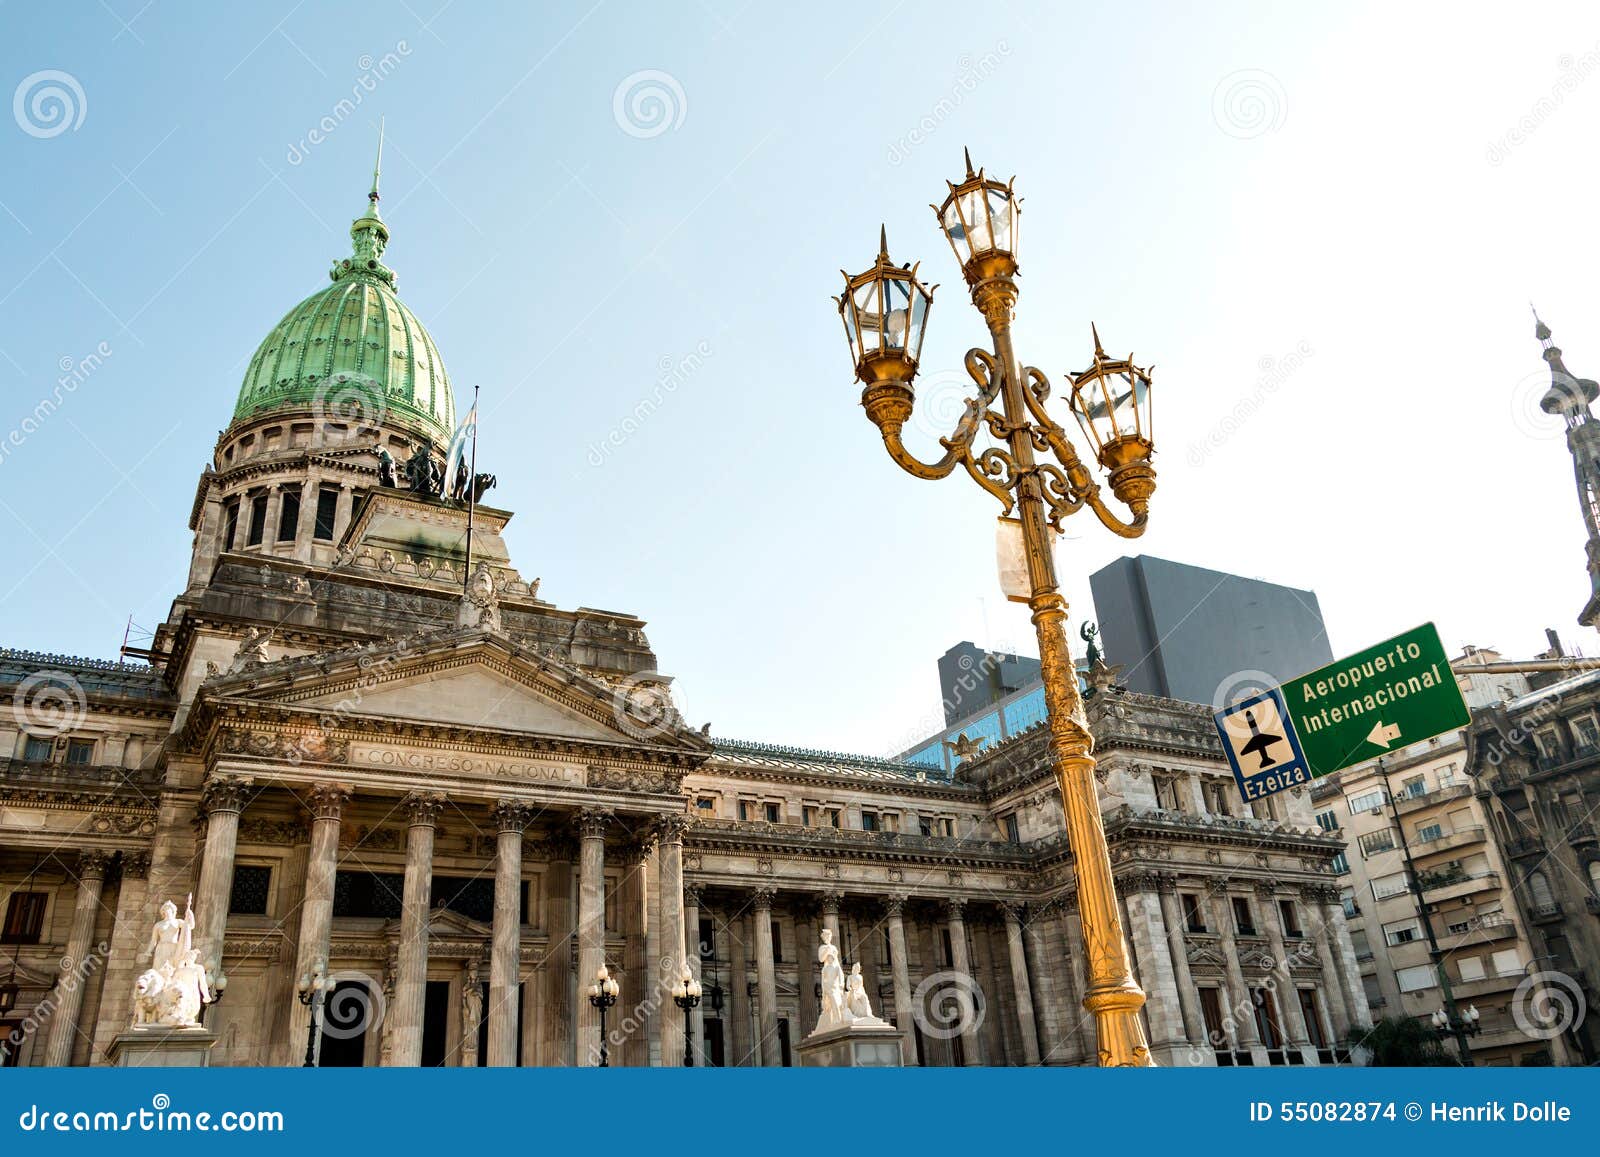 congreso de la nacion argentina, in buenos aires